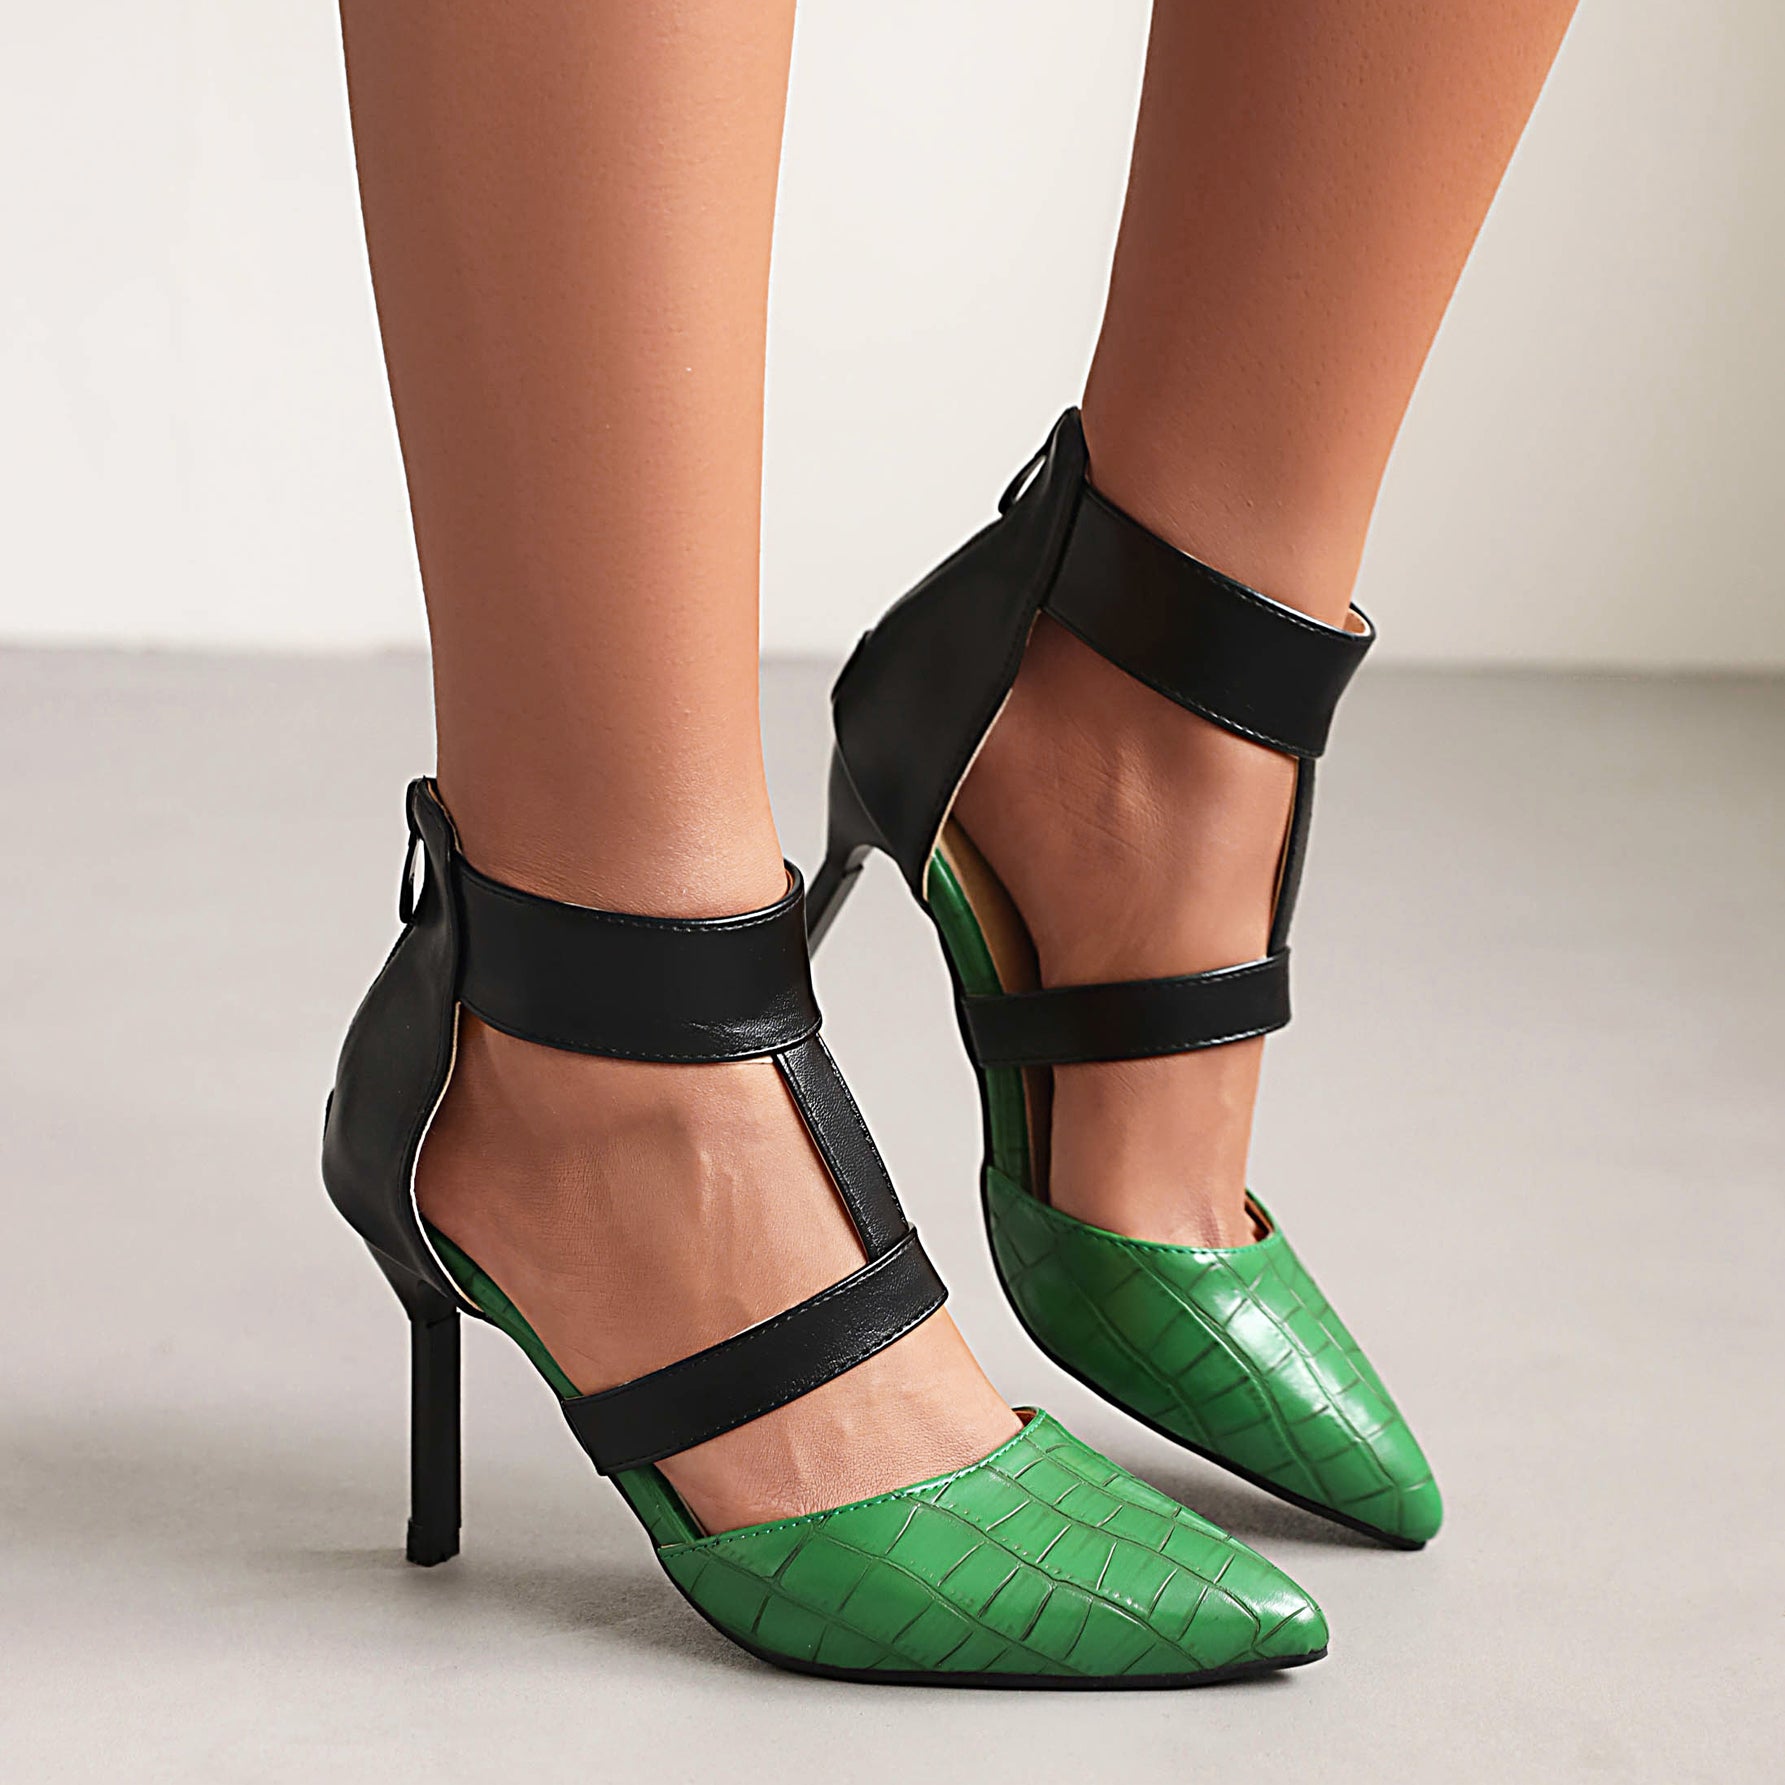 The Bigsizeheels T Strap Pointed Toe_Stiletto Heels Sandals - Green best oversized women heels from bigsizeheels